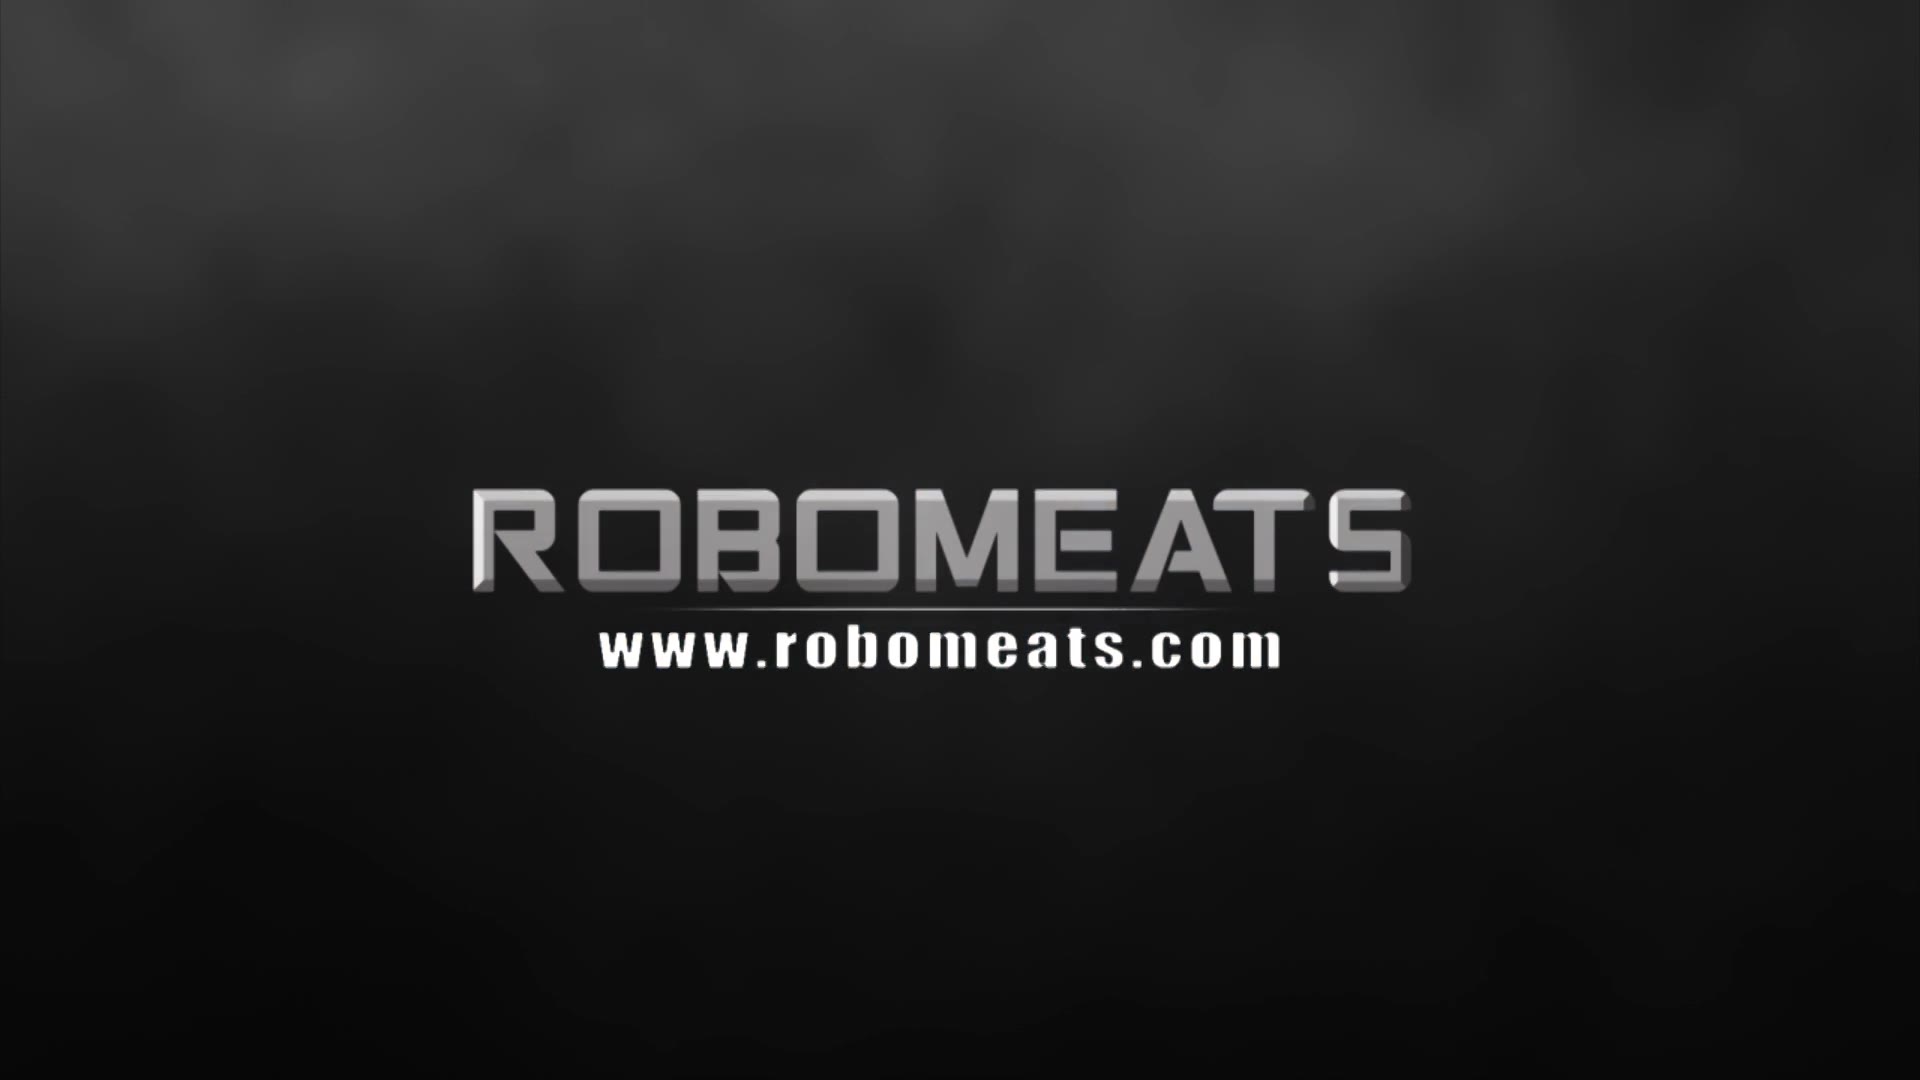 Robomeats.com